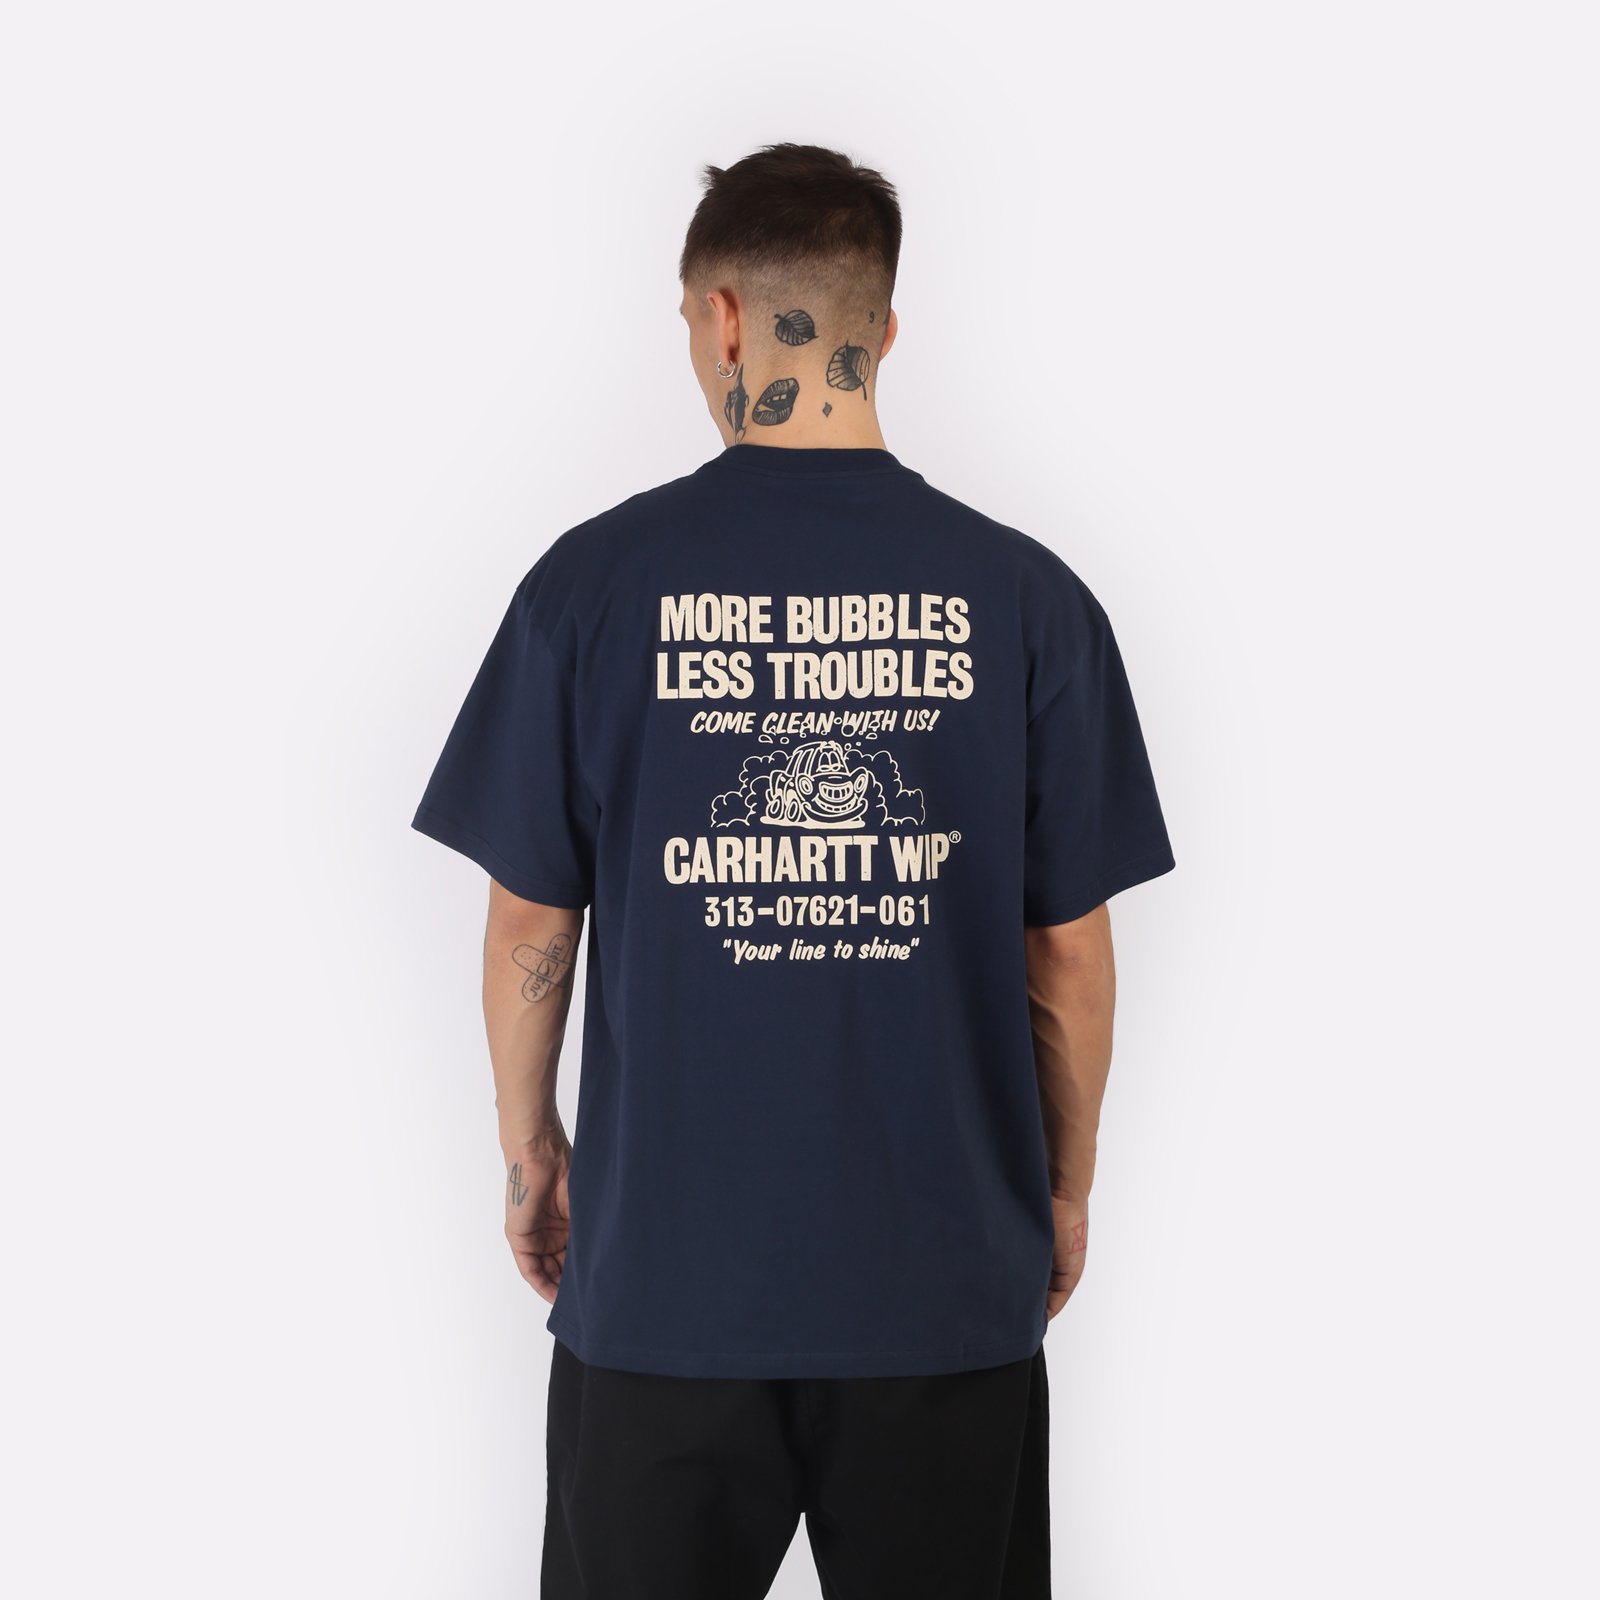 мужская футболка Carhartt WIP S/S Less Troubles T-Shirt  (I033187-blue/wax)  - цена, описание, фото 2